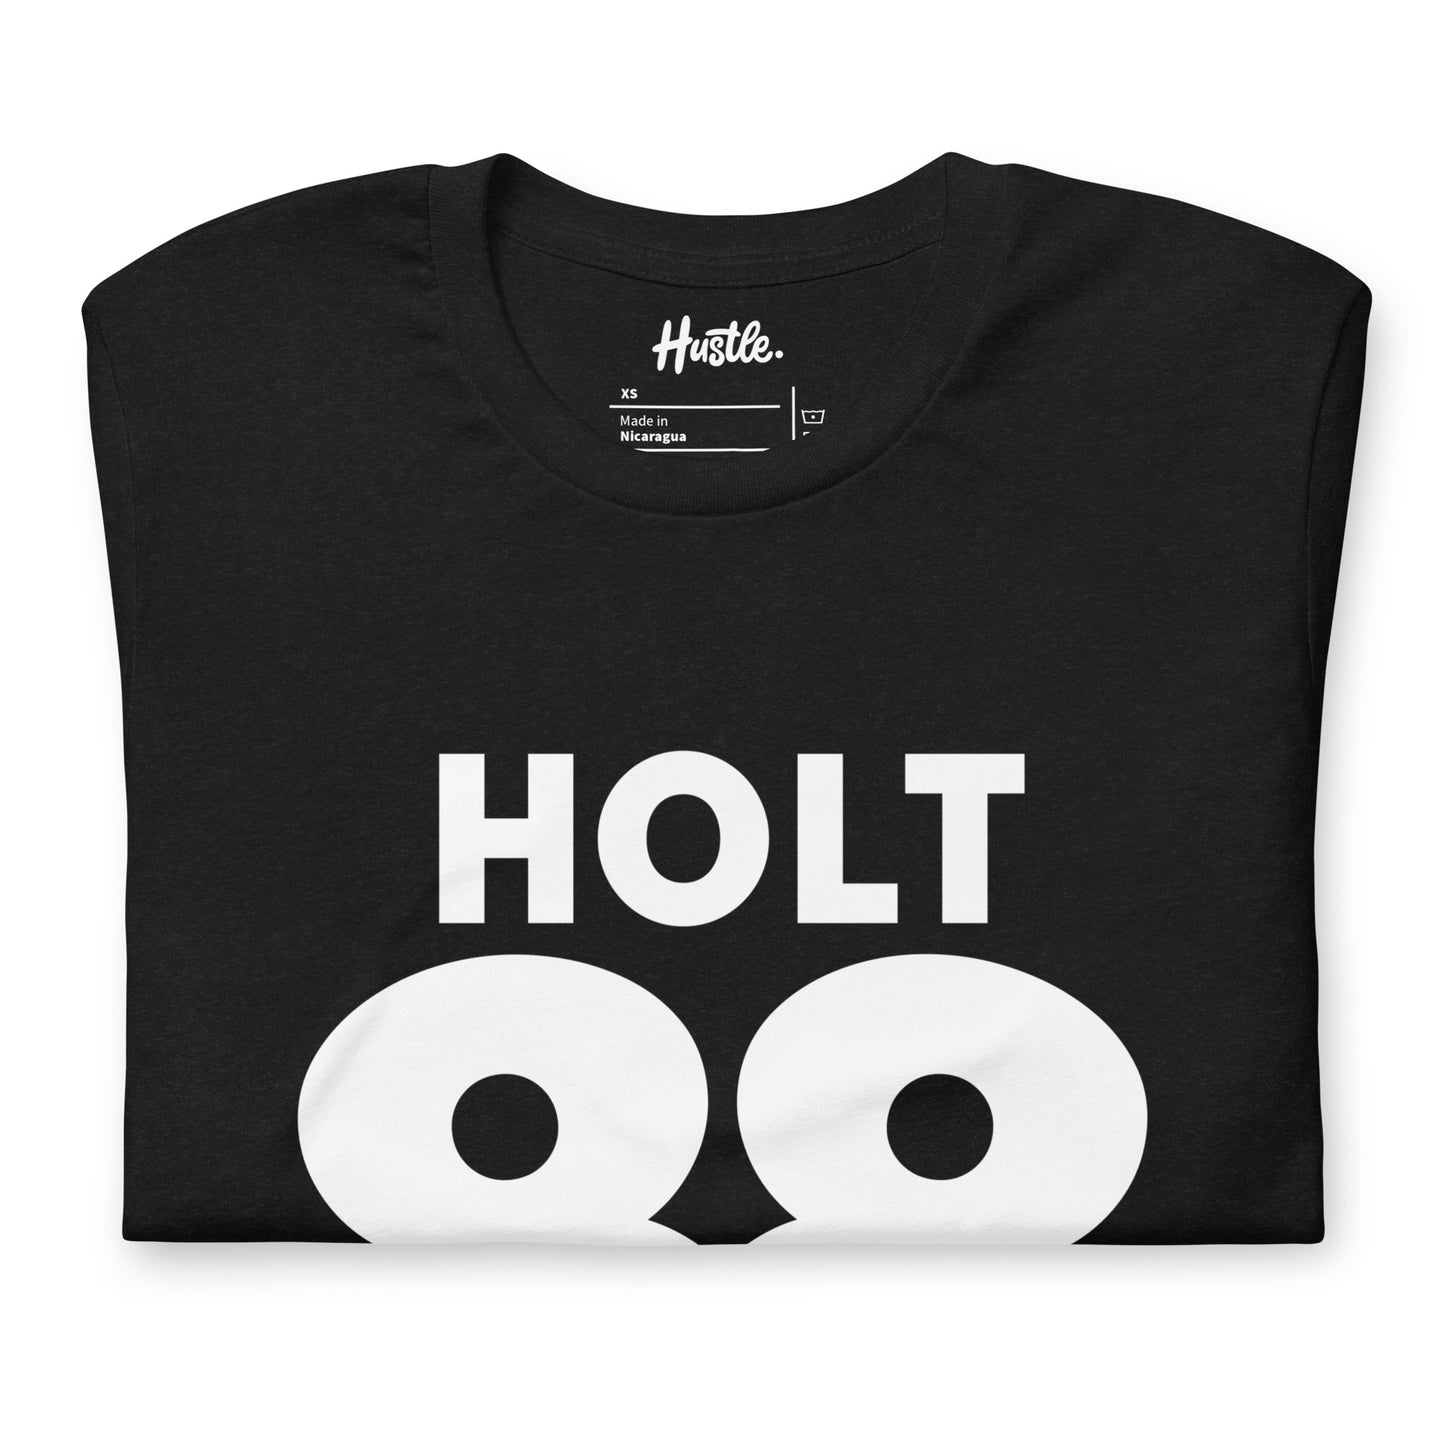 Holt 88 X Hustle Tee